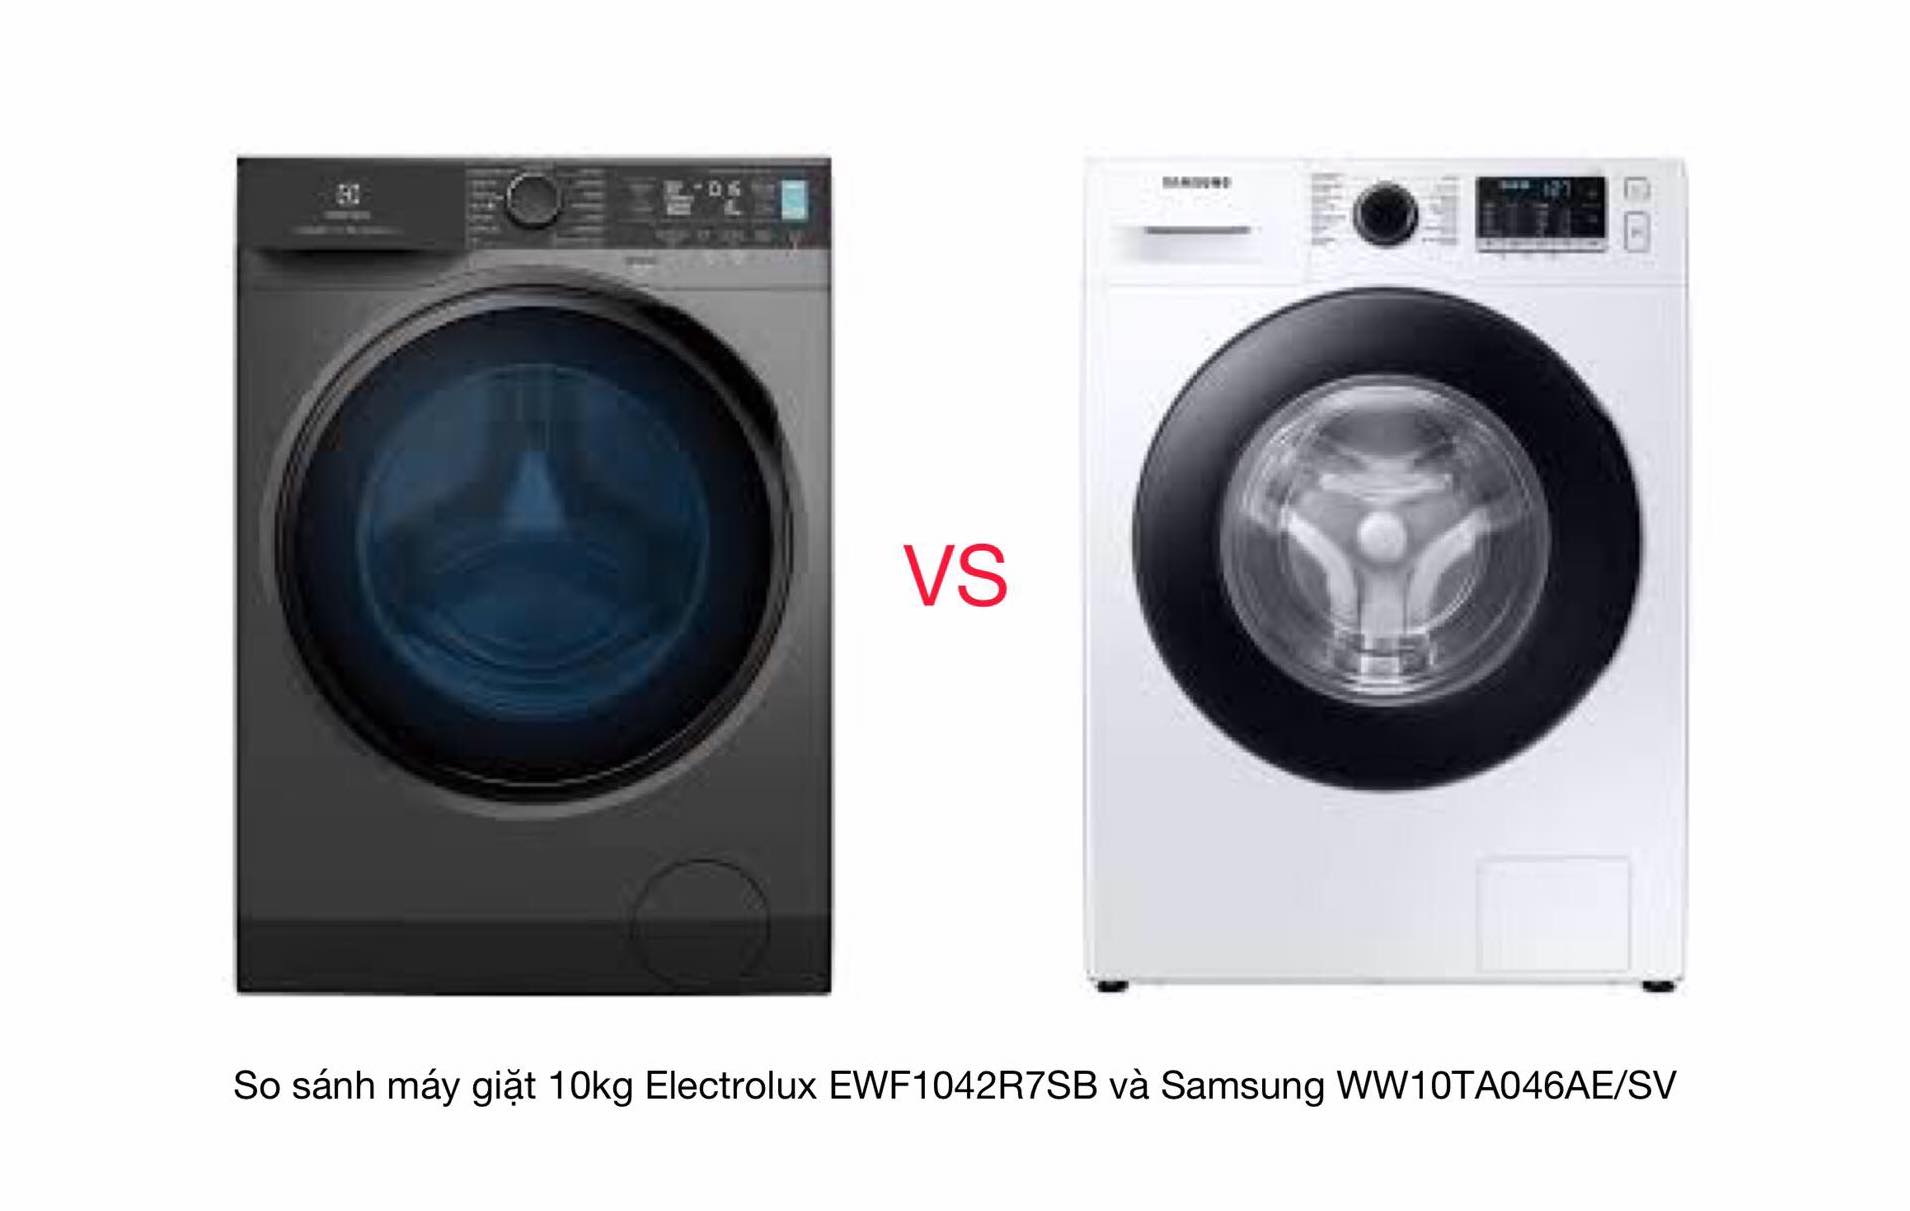 Nên chọn mua máy giặt 10kg Electrolux EWF1042R7SB hay Samsung WW10TA046AE/SV thì tốt hơn?